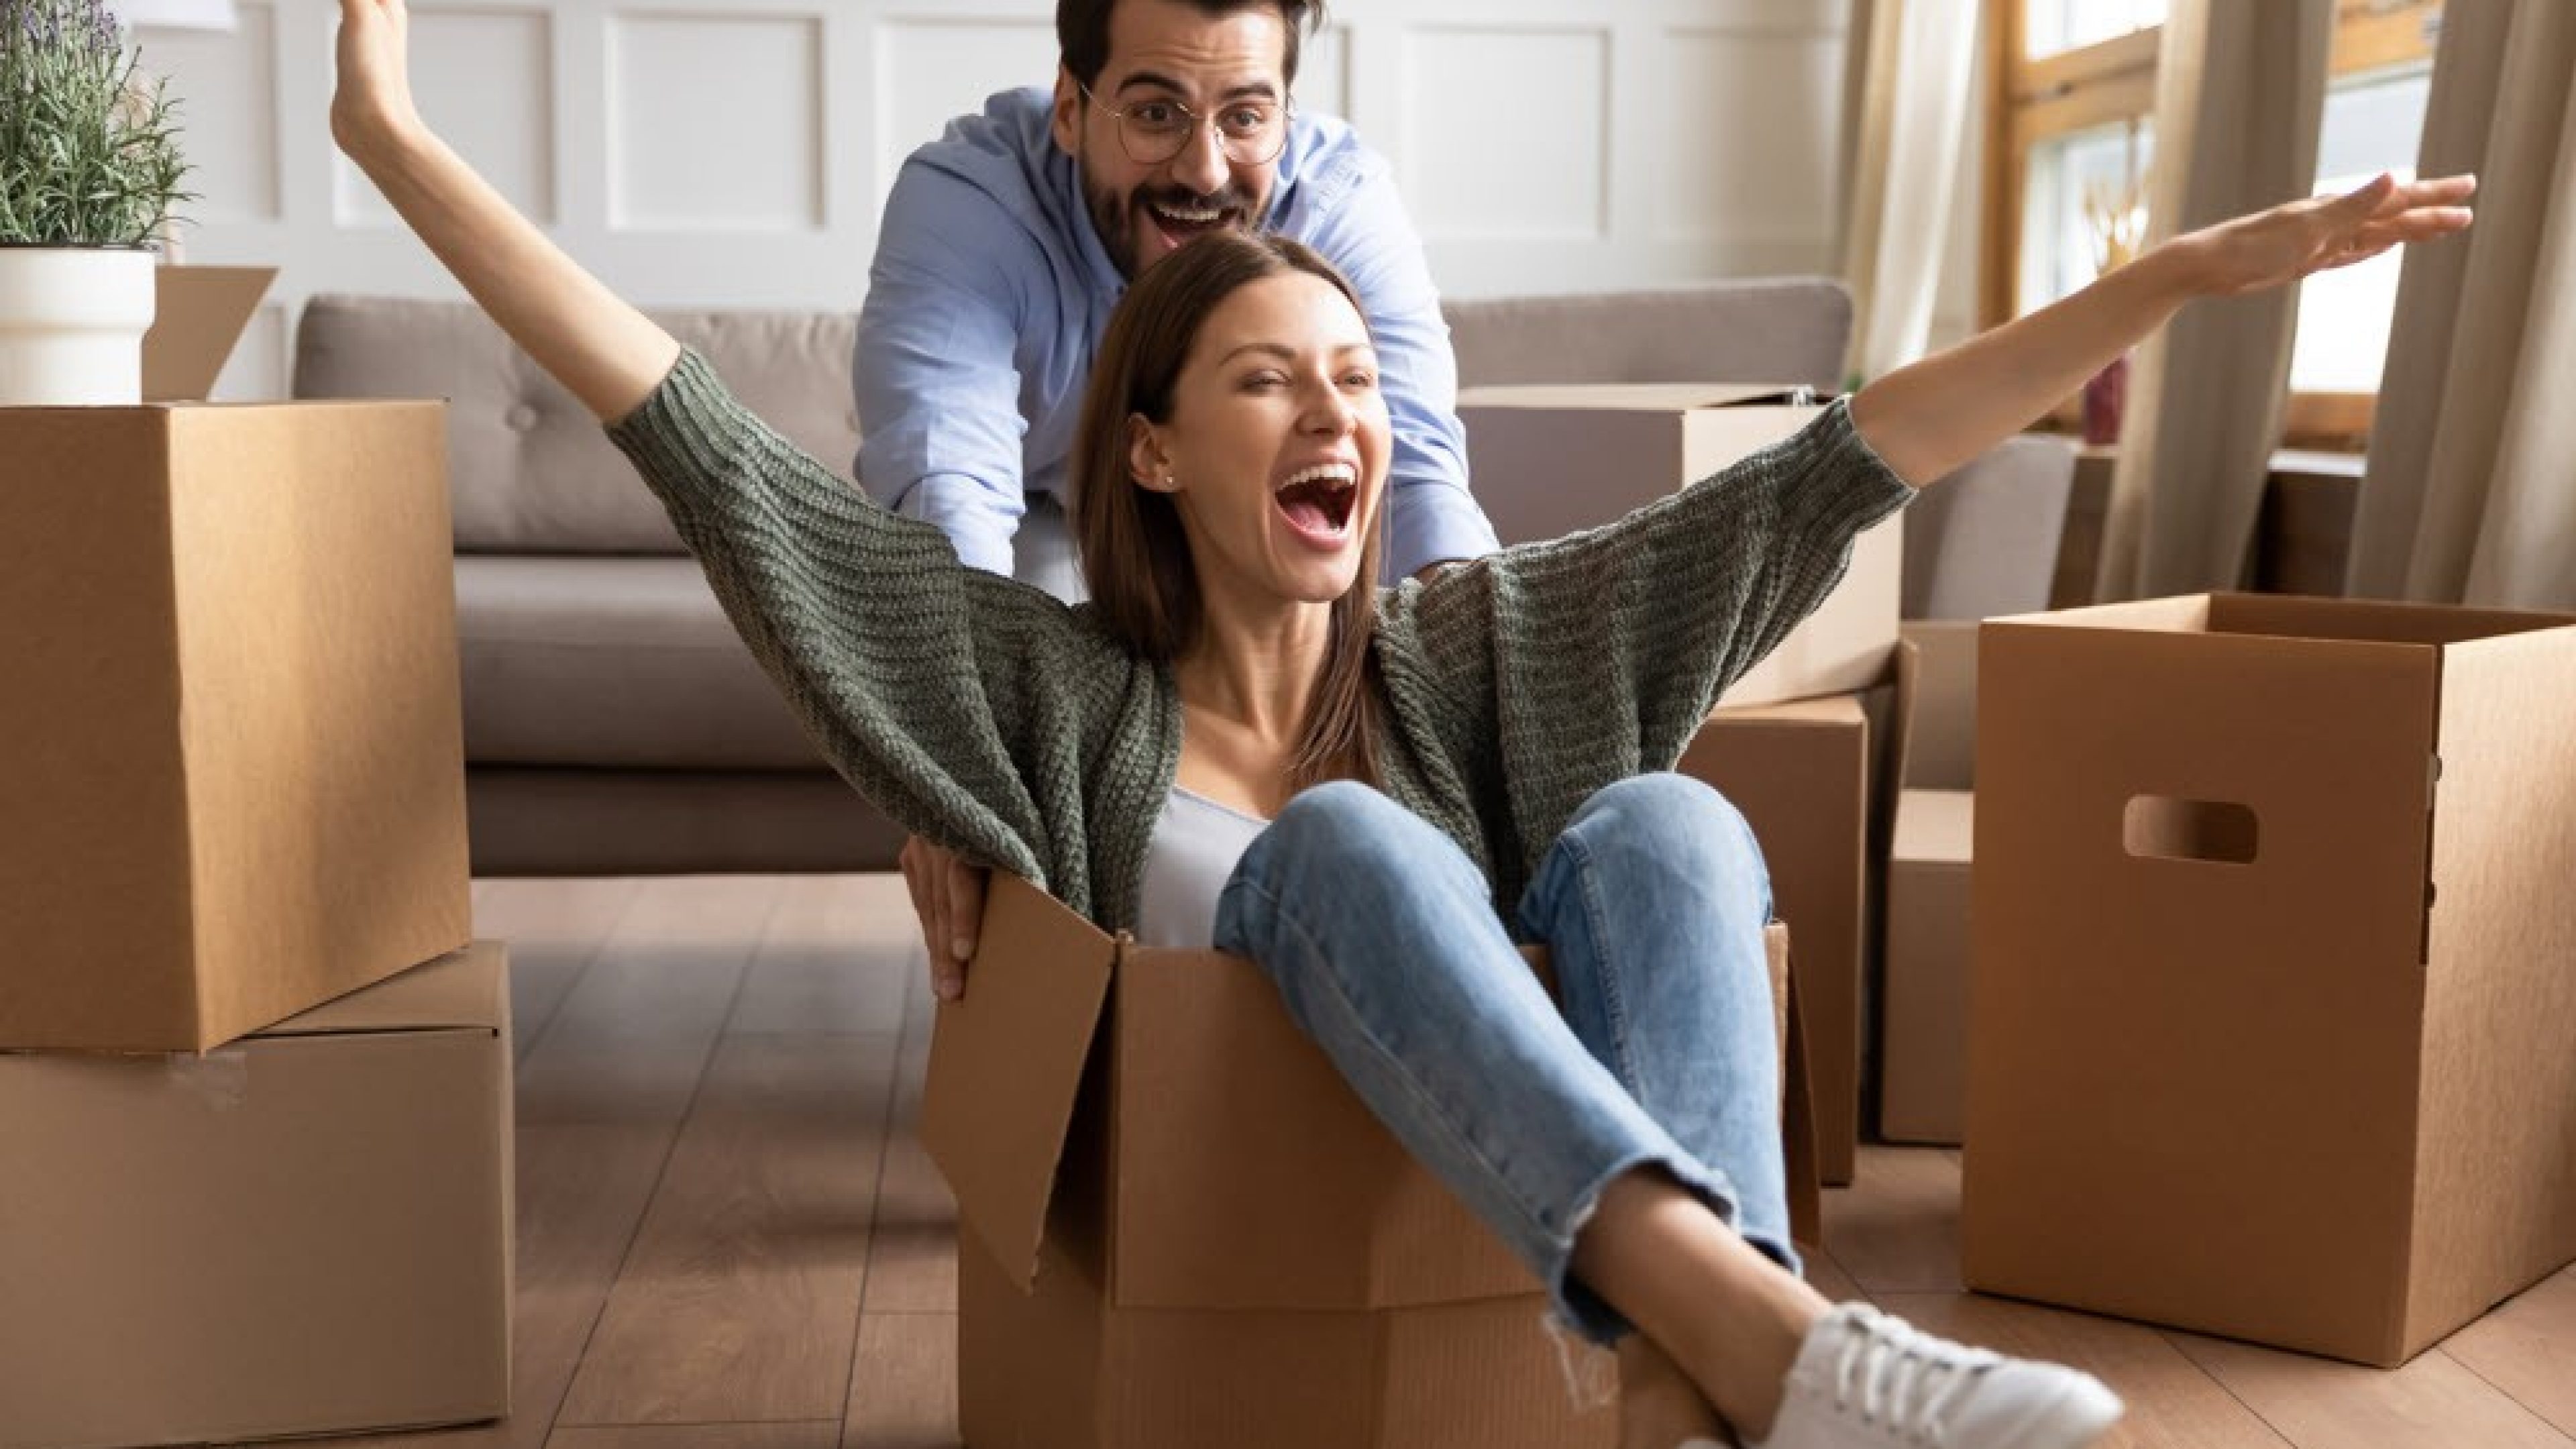 Une jeune femme souriante est assise dans un carton et son mari la pousse à travers le salon, dans lequel se trouvent de nombreuses cartons de déménagement.